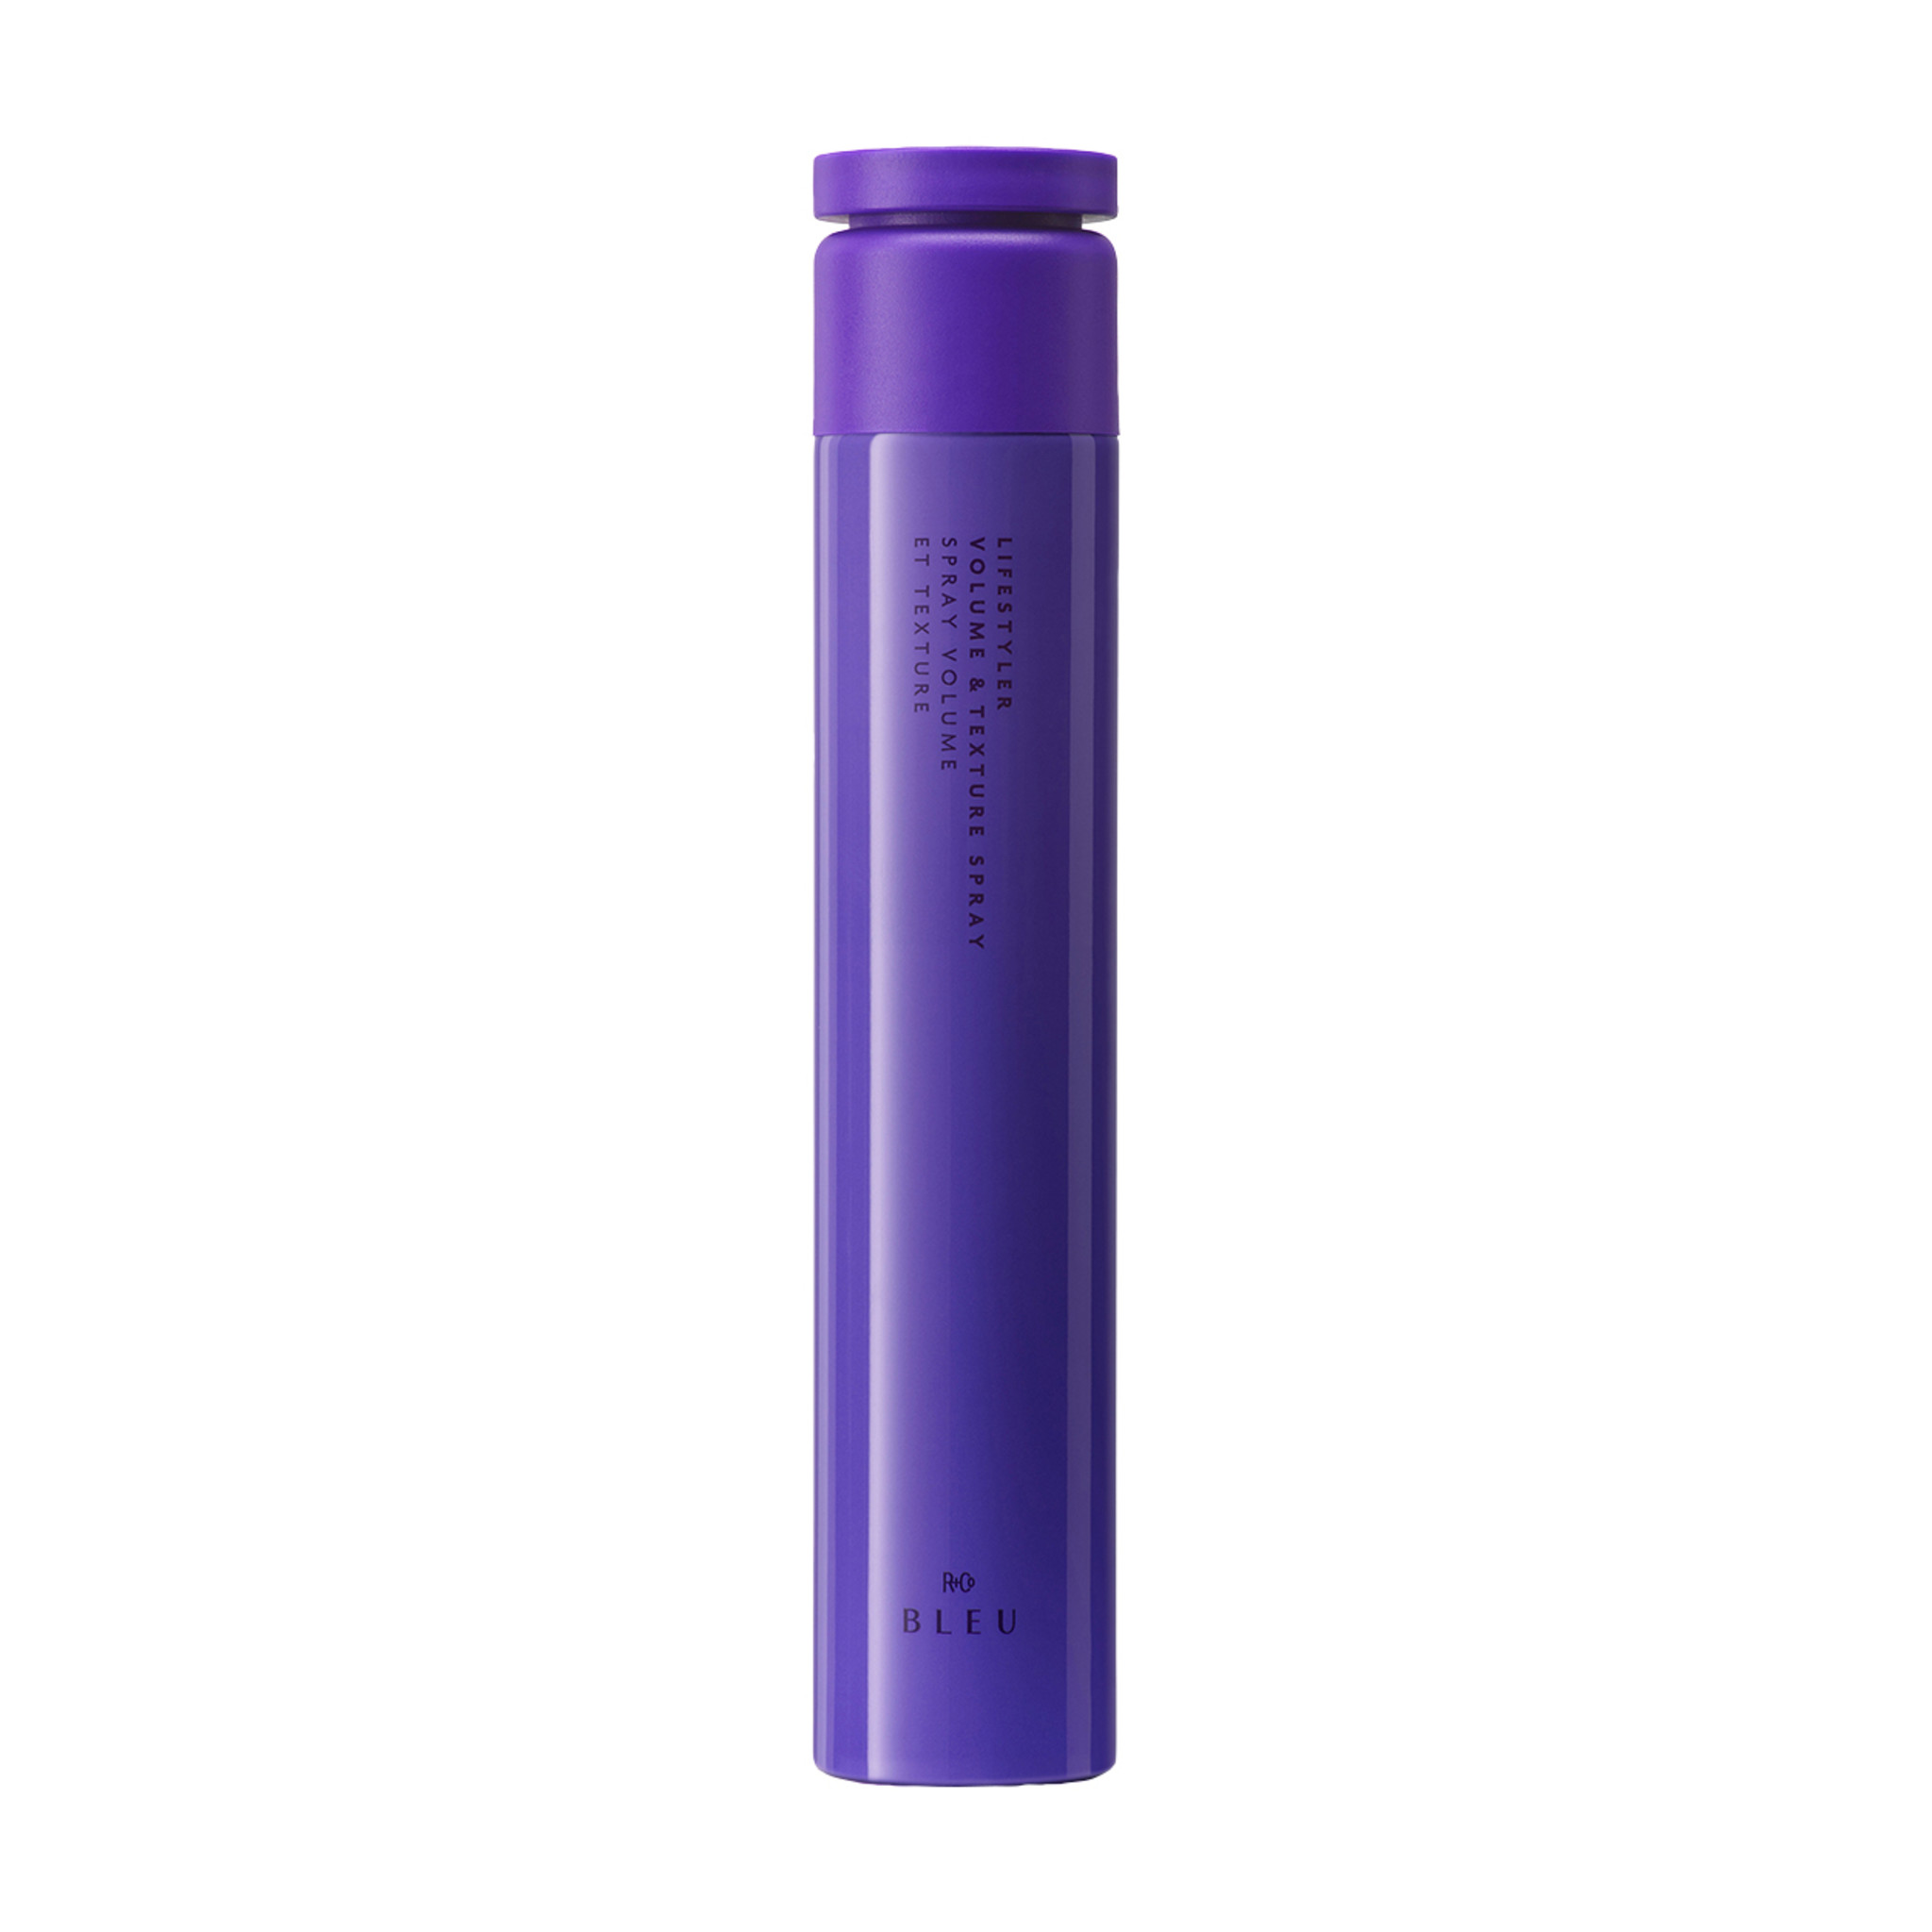 Spray can of R+Co Bleu Lifestyler Volume & Texture Spray